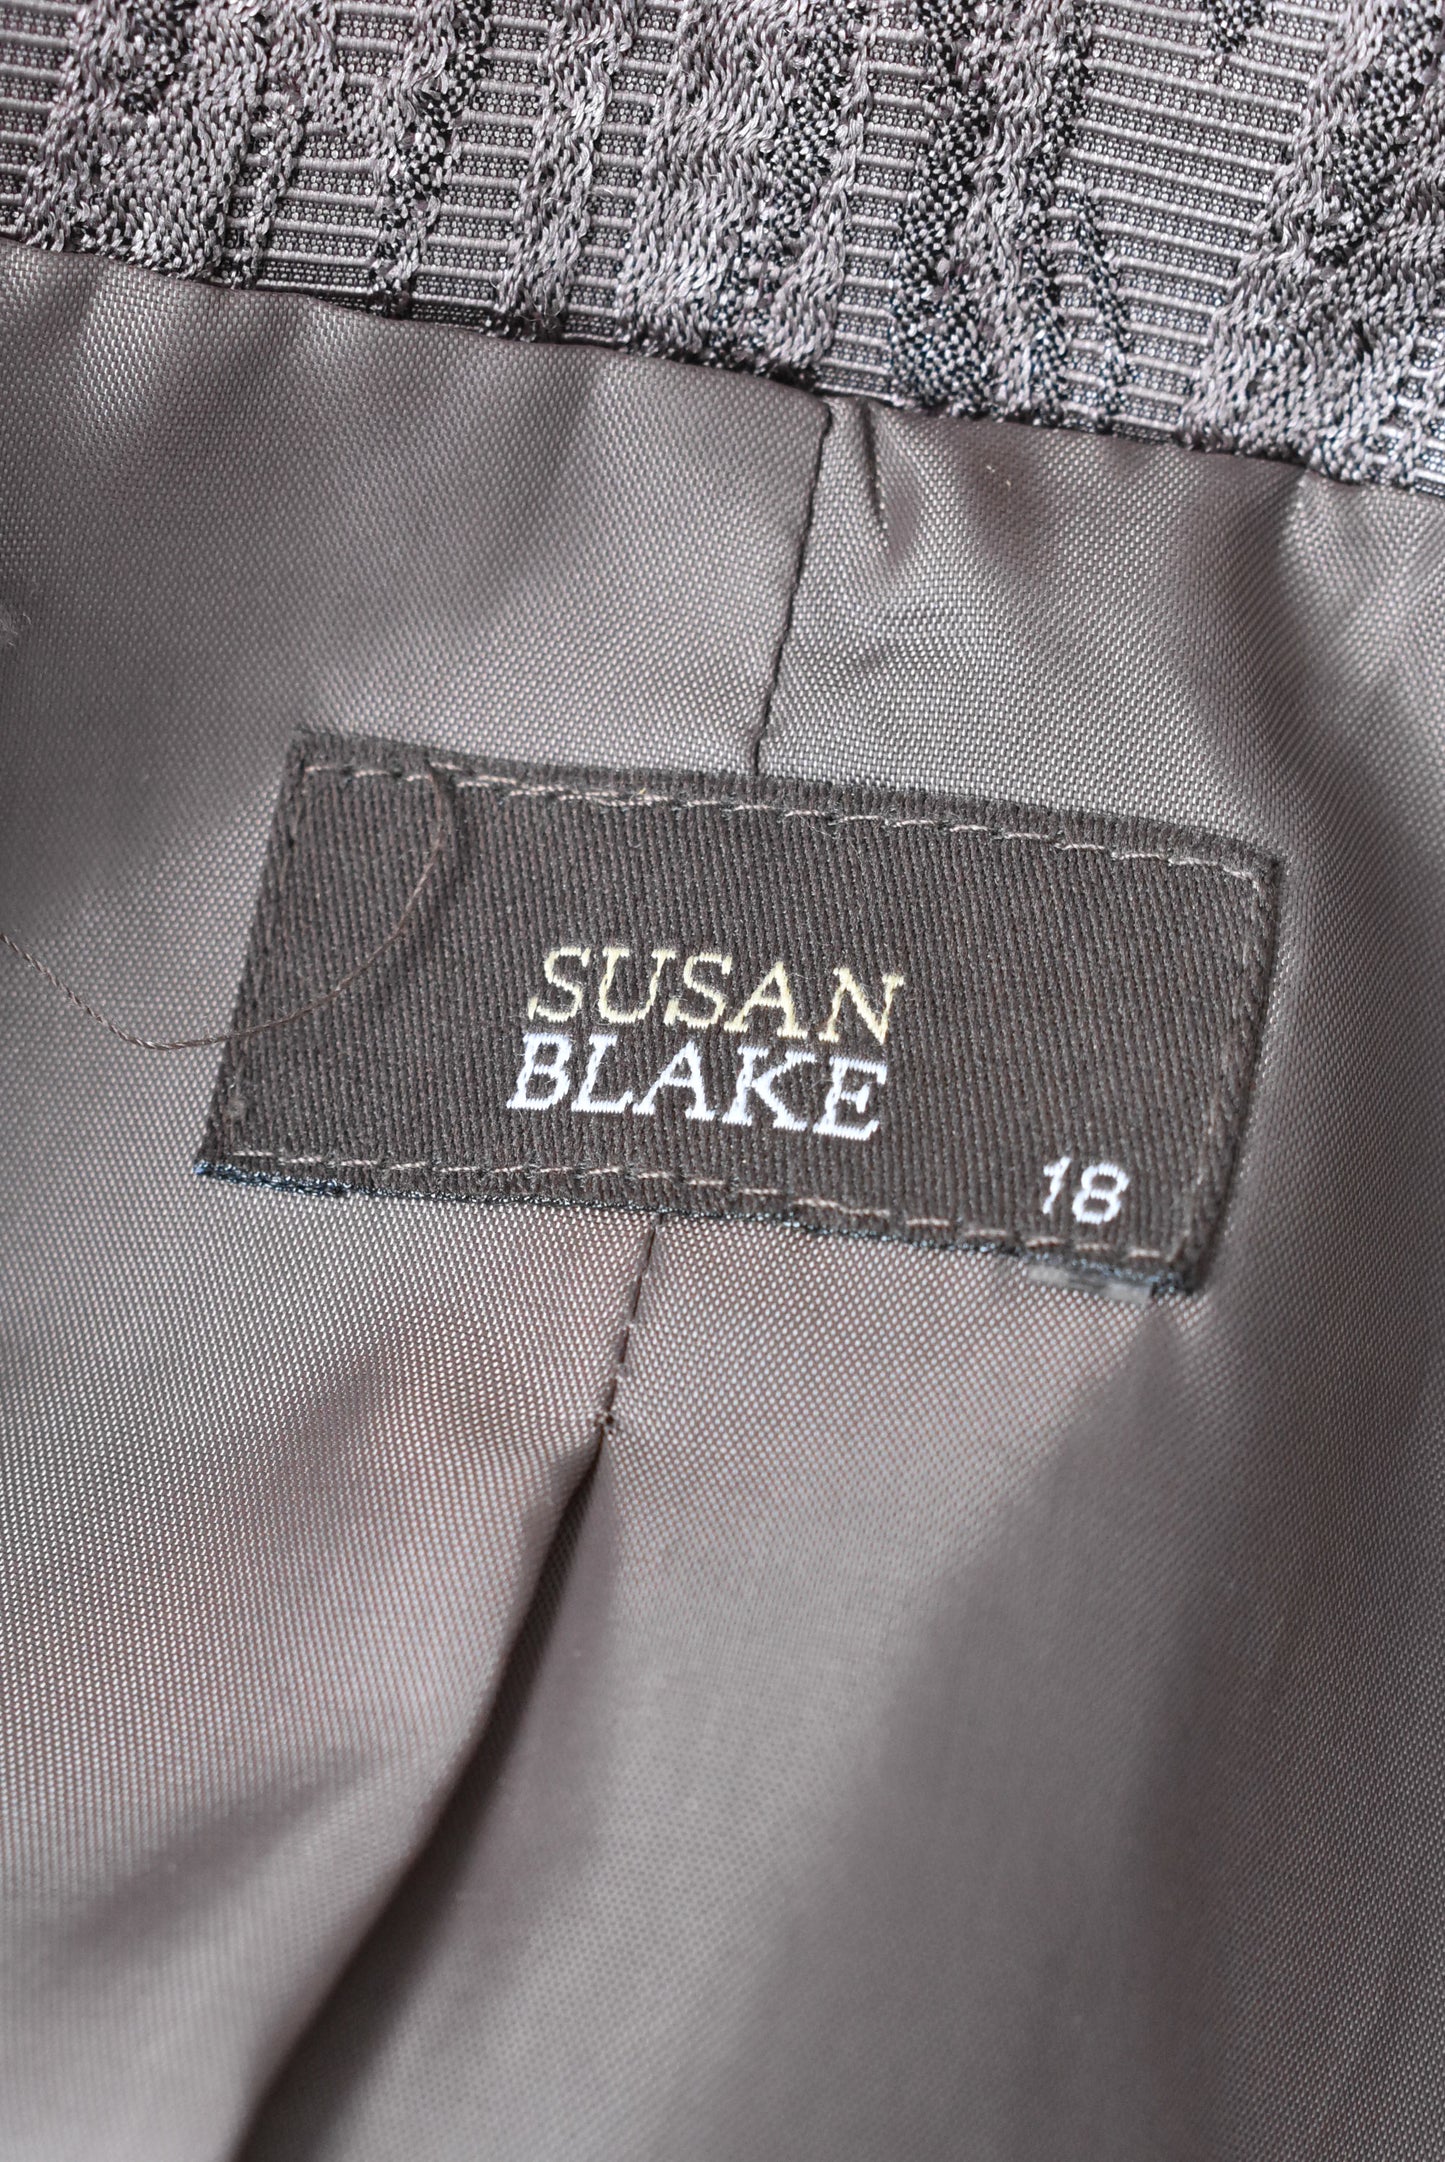 Susan Blake brocade three button collarless blazer, 18